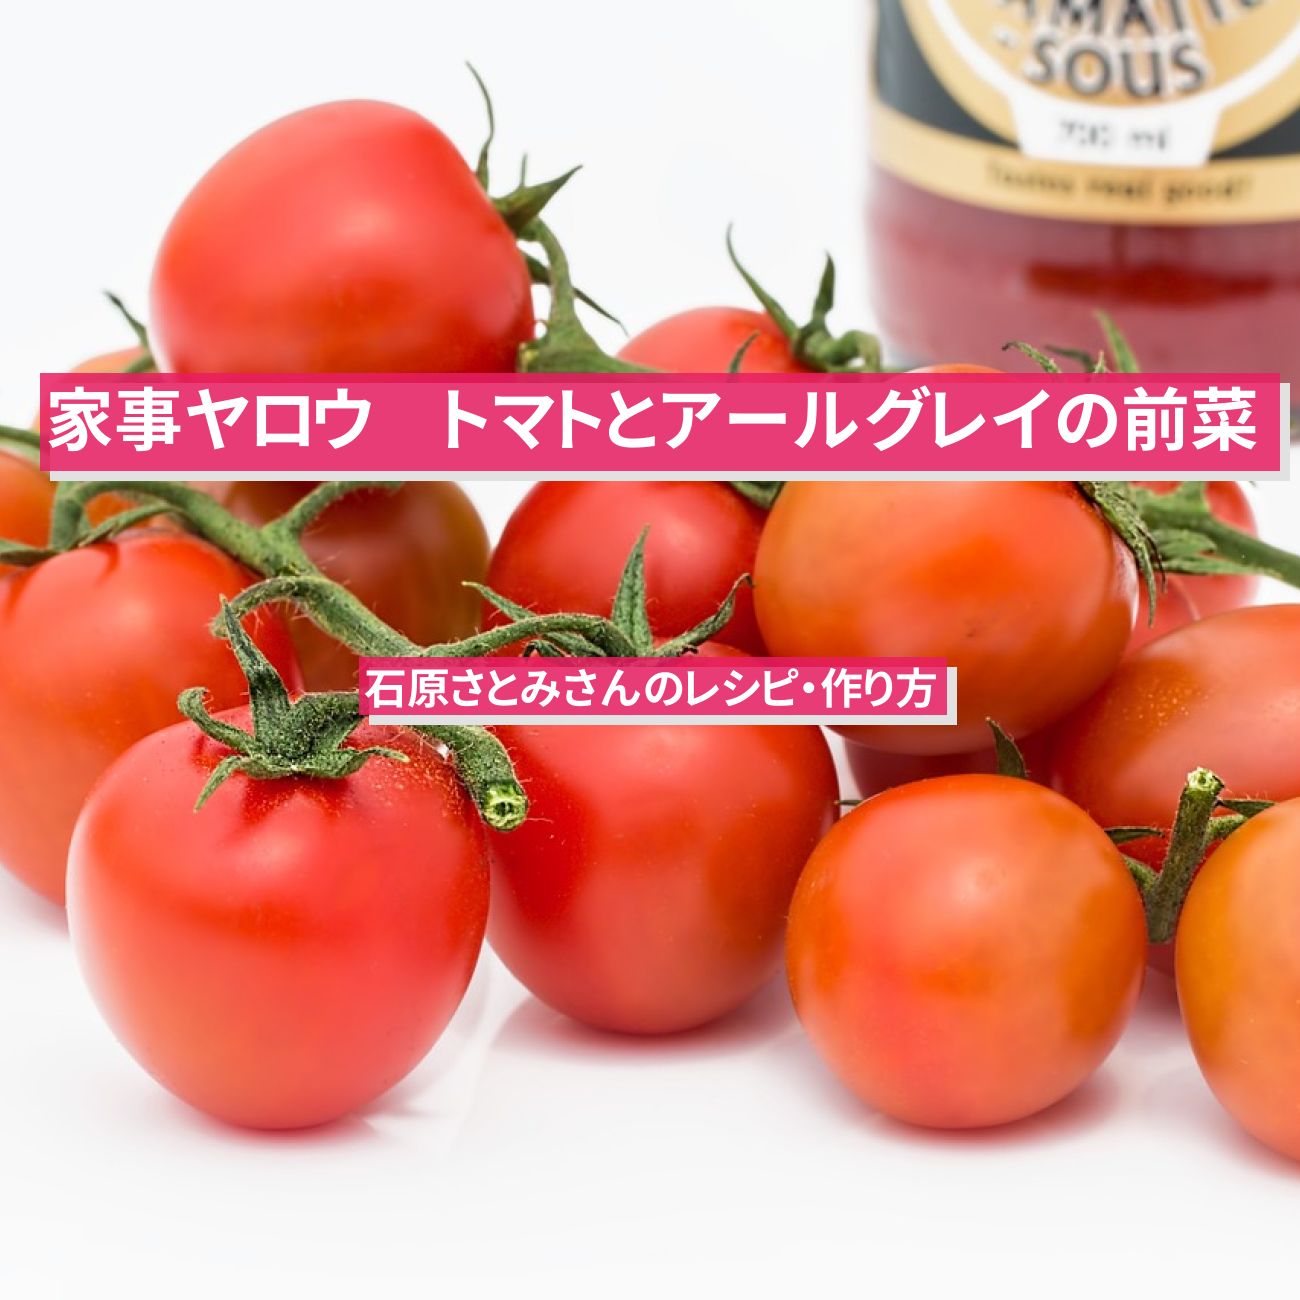 【家事ヤロウ】『トマトとアールグレイ紅茶の前菜』石原さとみさんのレシピ・作り方